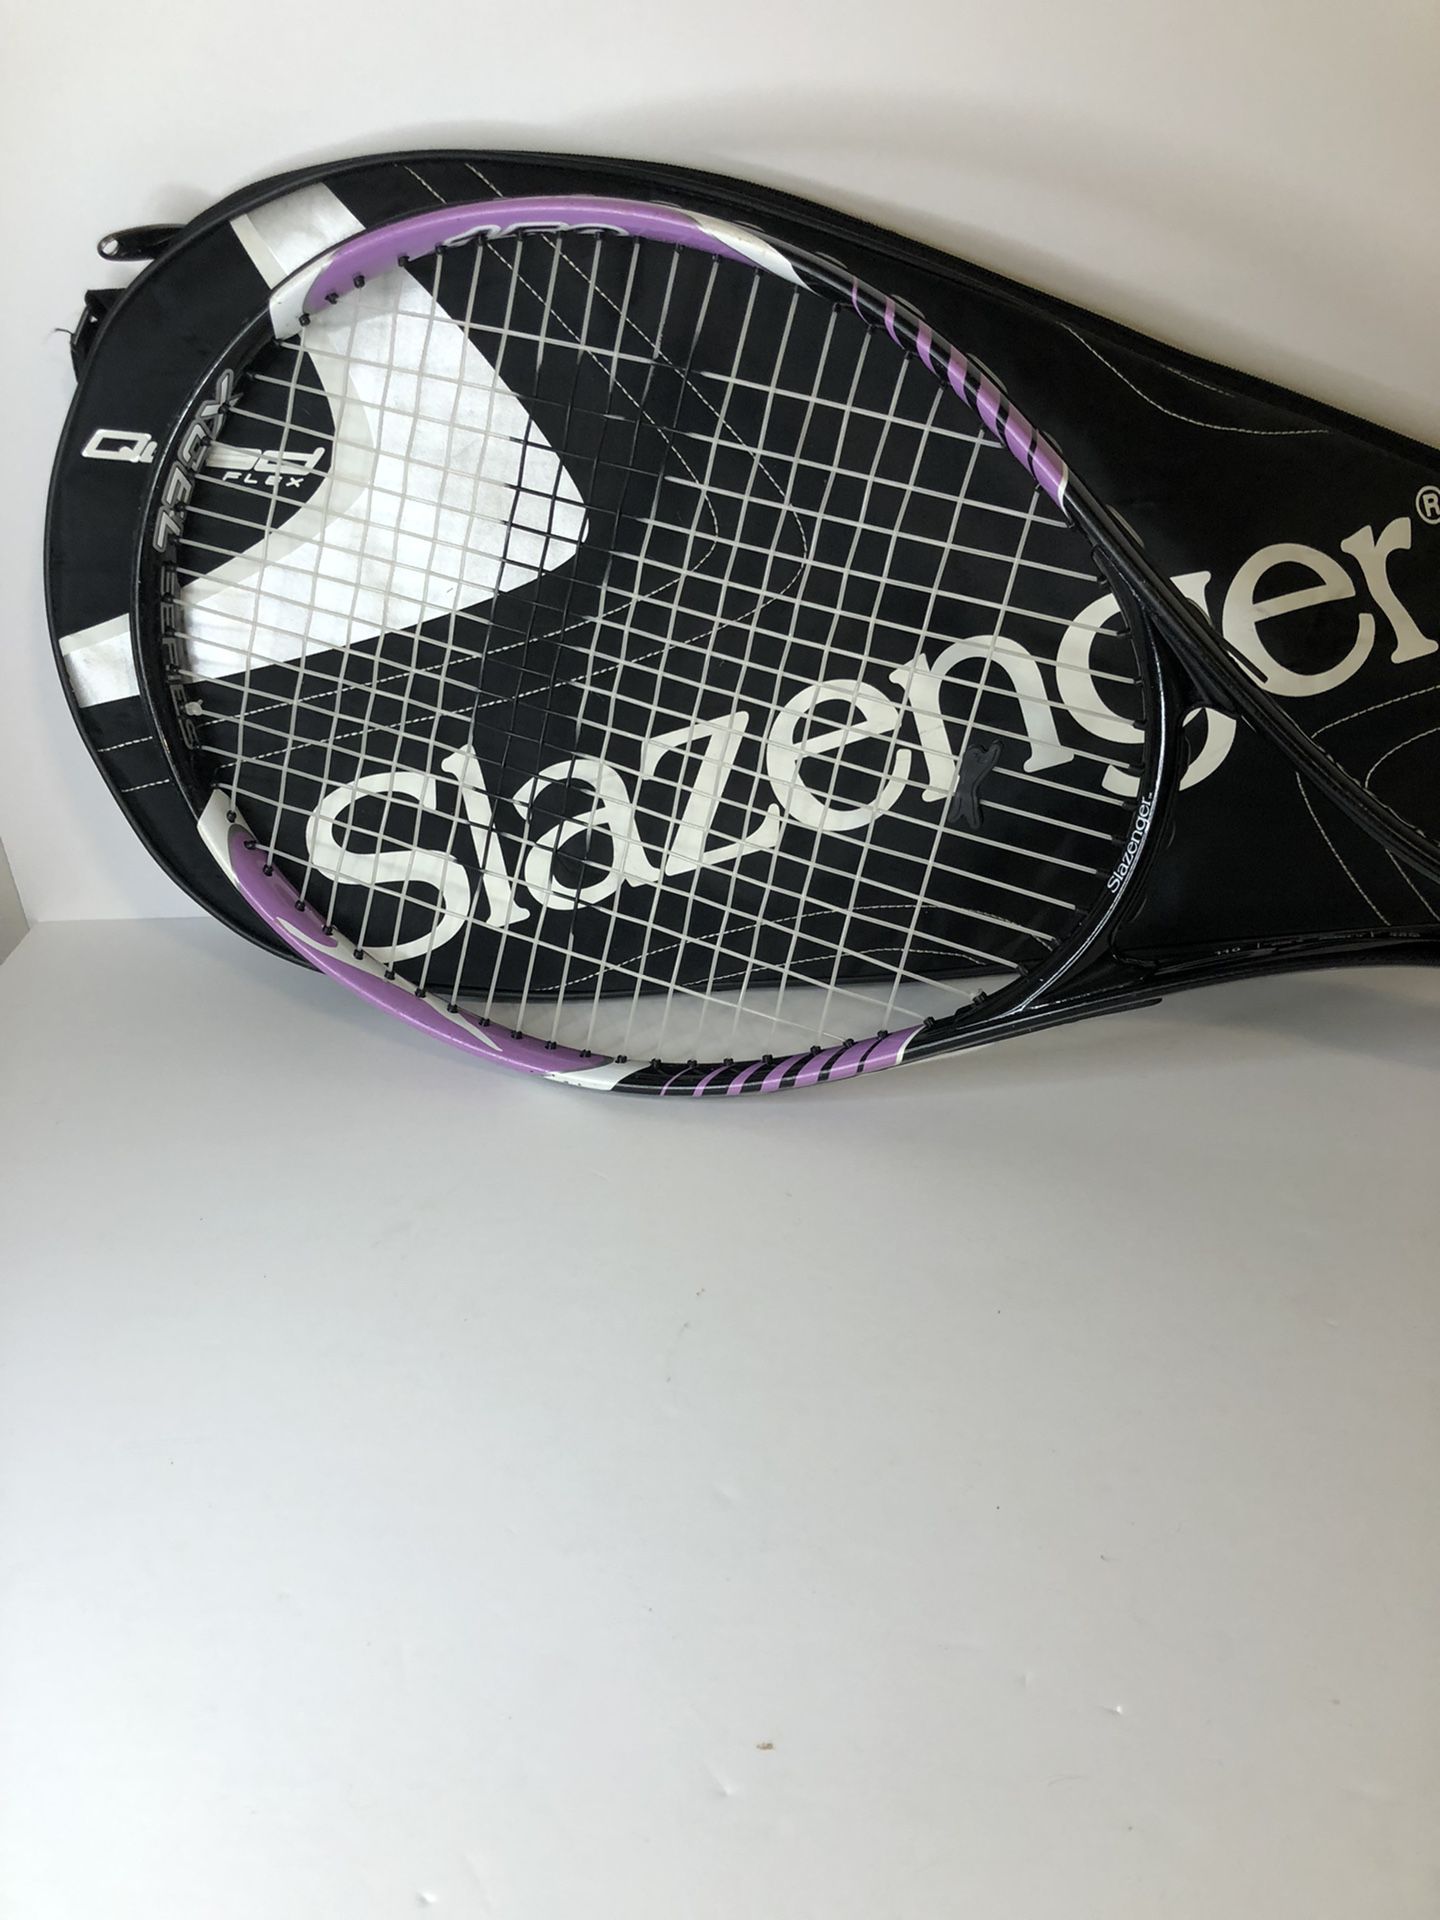 Slazenger Tennis Racket With The Jacket